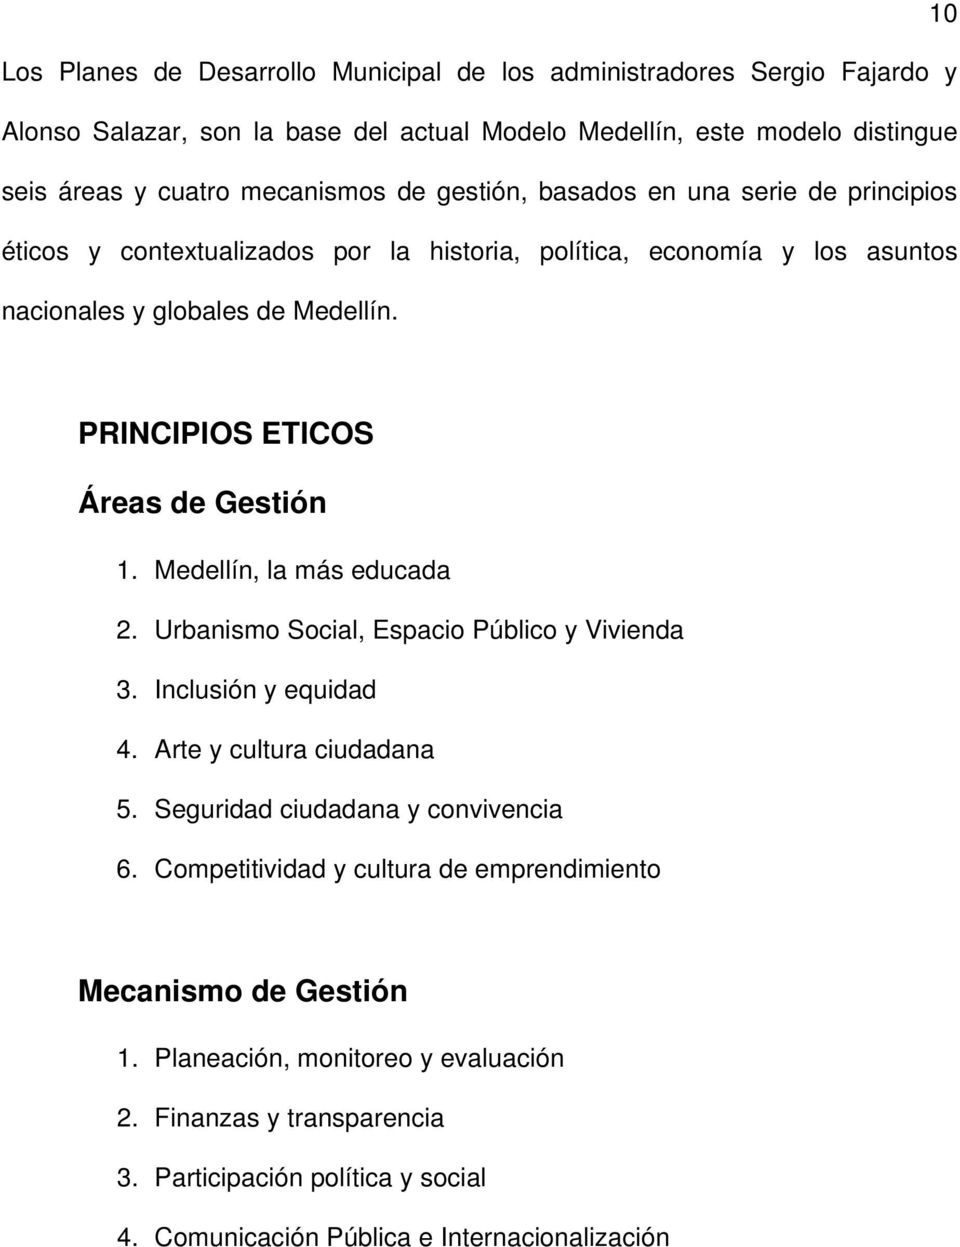 PRINCIPIOS ETICOS Áreas de Gestión 1. Medellín, la más educada 2. Urbanismo Social, Espacio Público y Vivienda 3. Inclusión y equidad 4. Arte y cultura ciudadana 5.